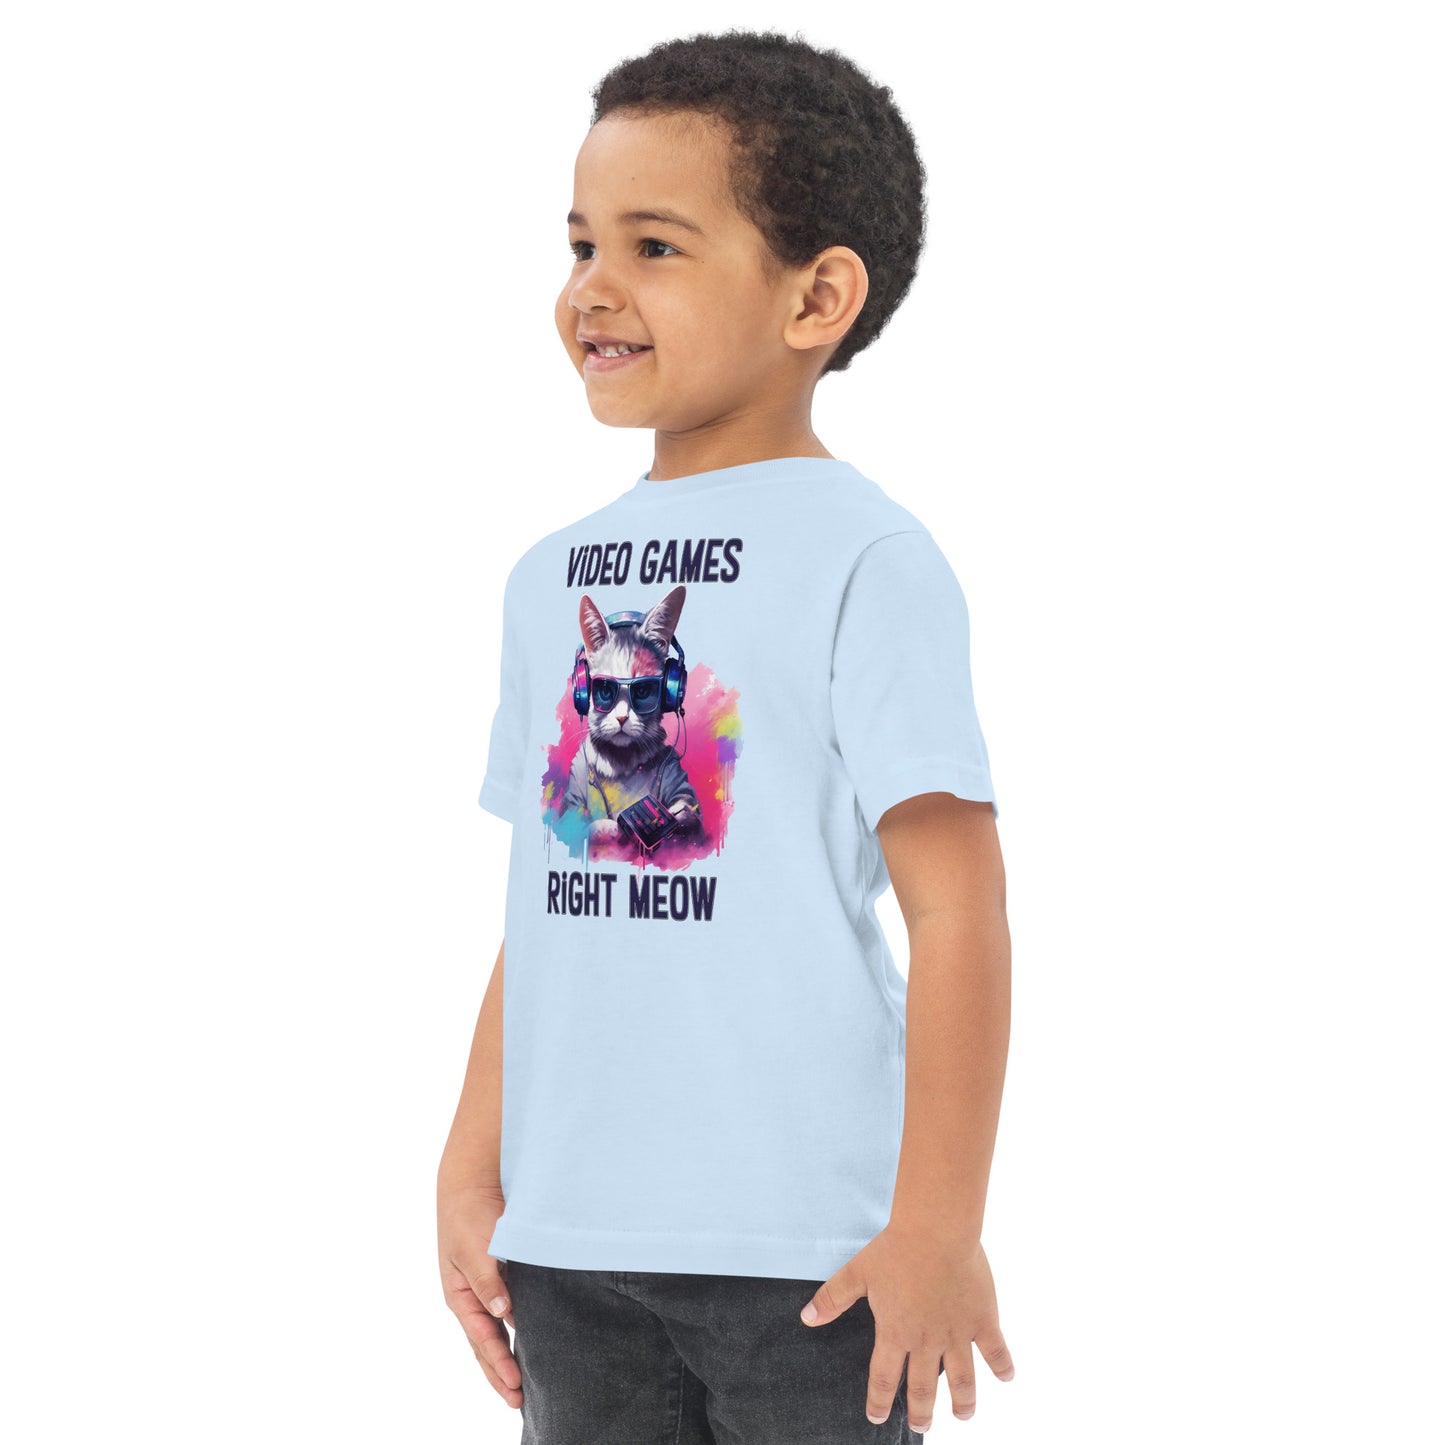 Toddler Gamer T-Shirt